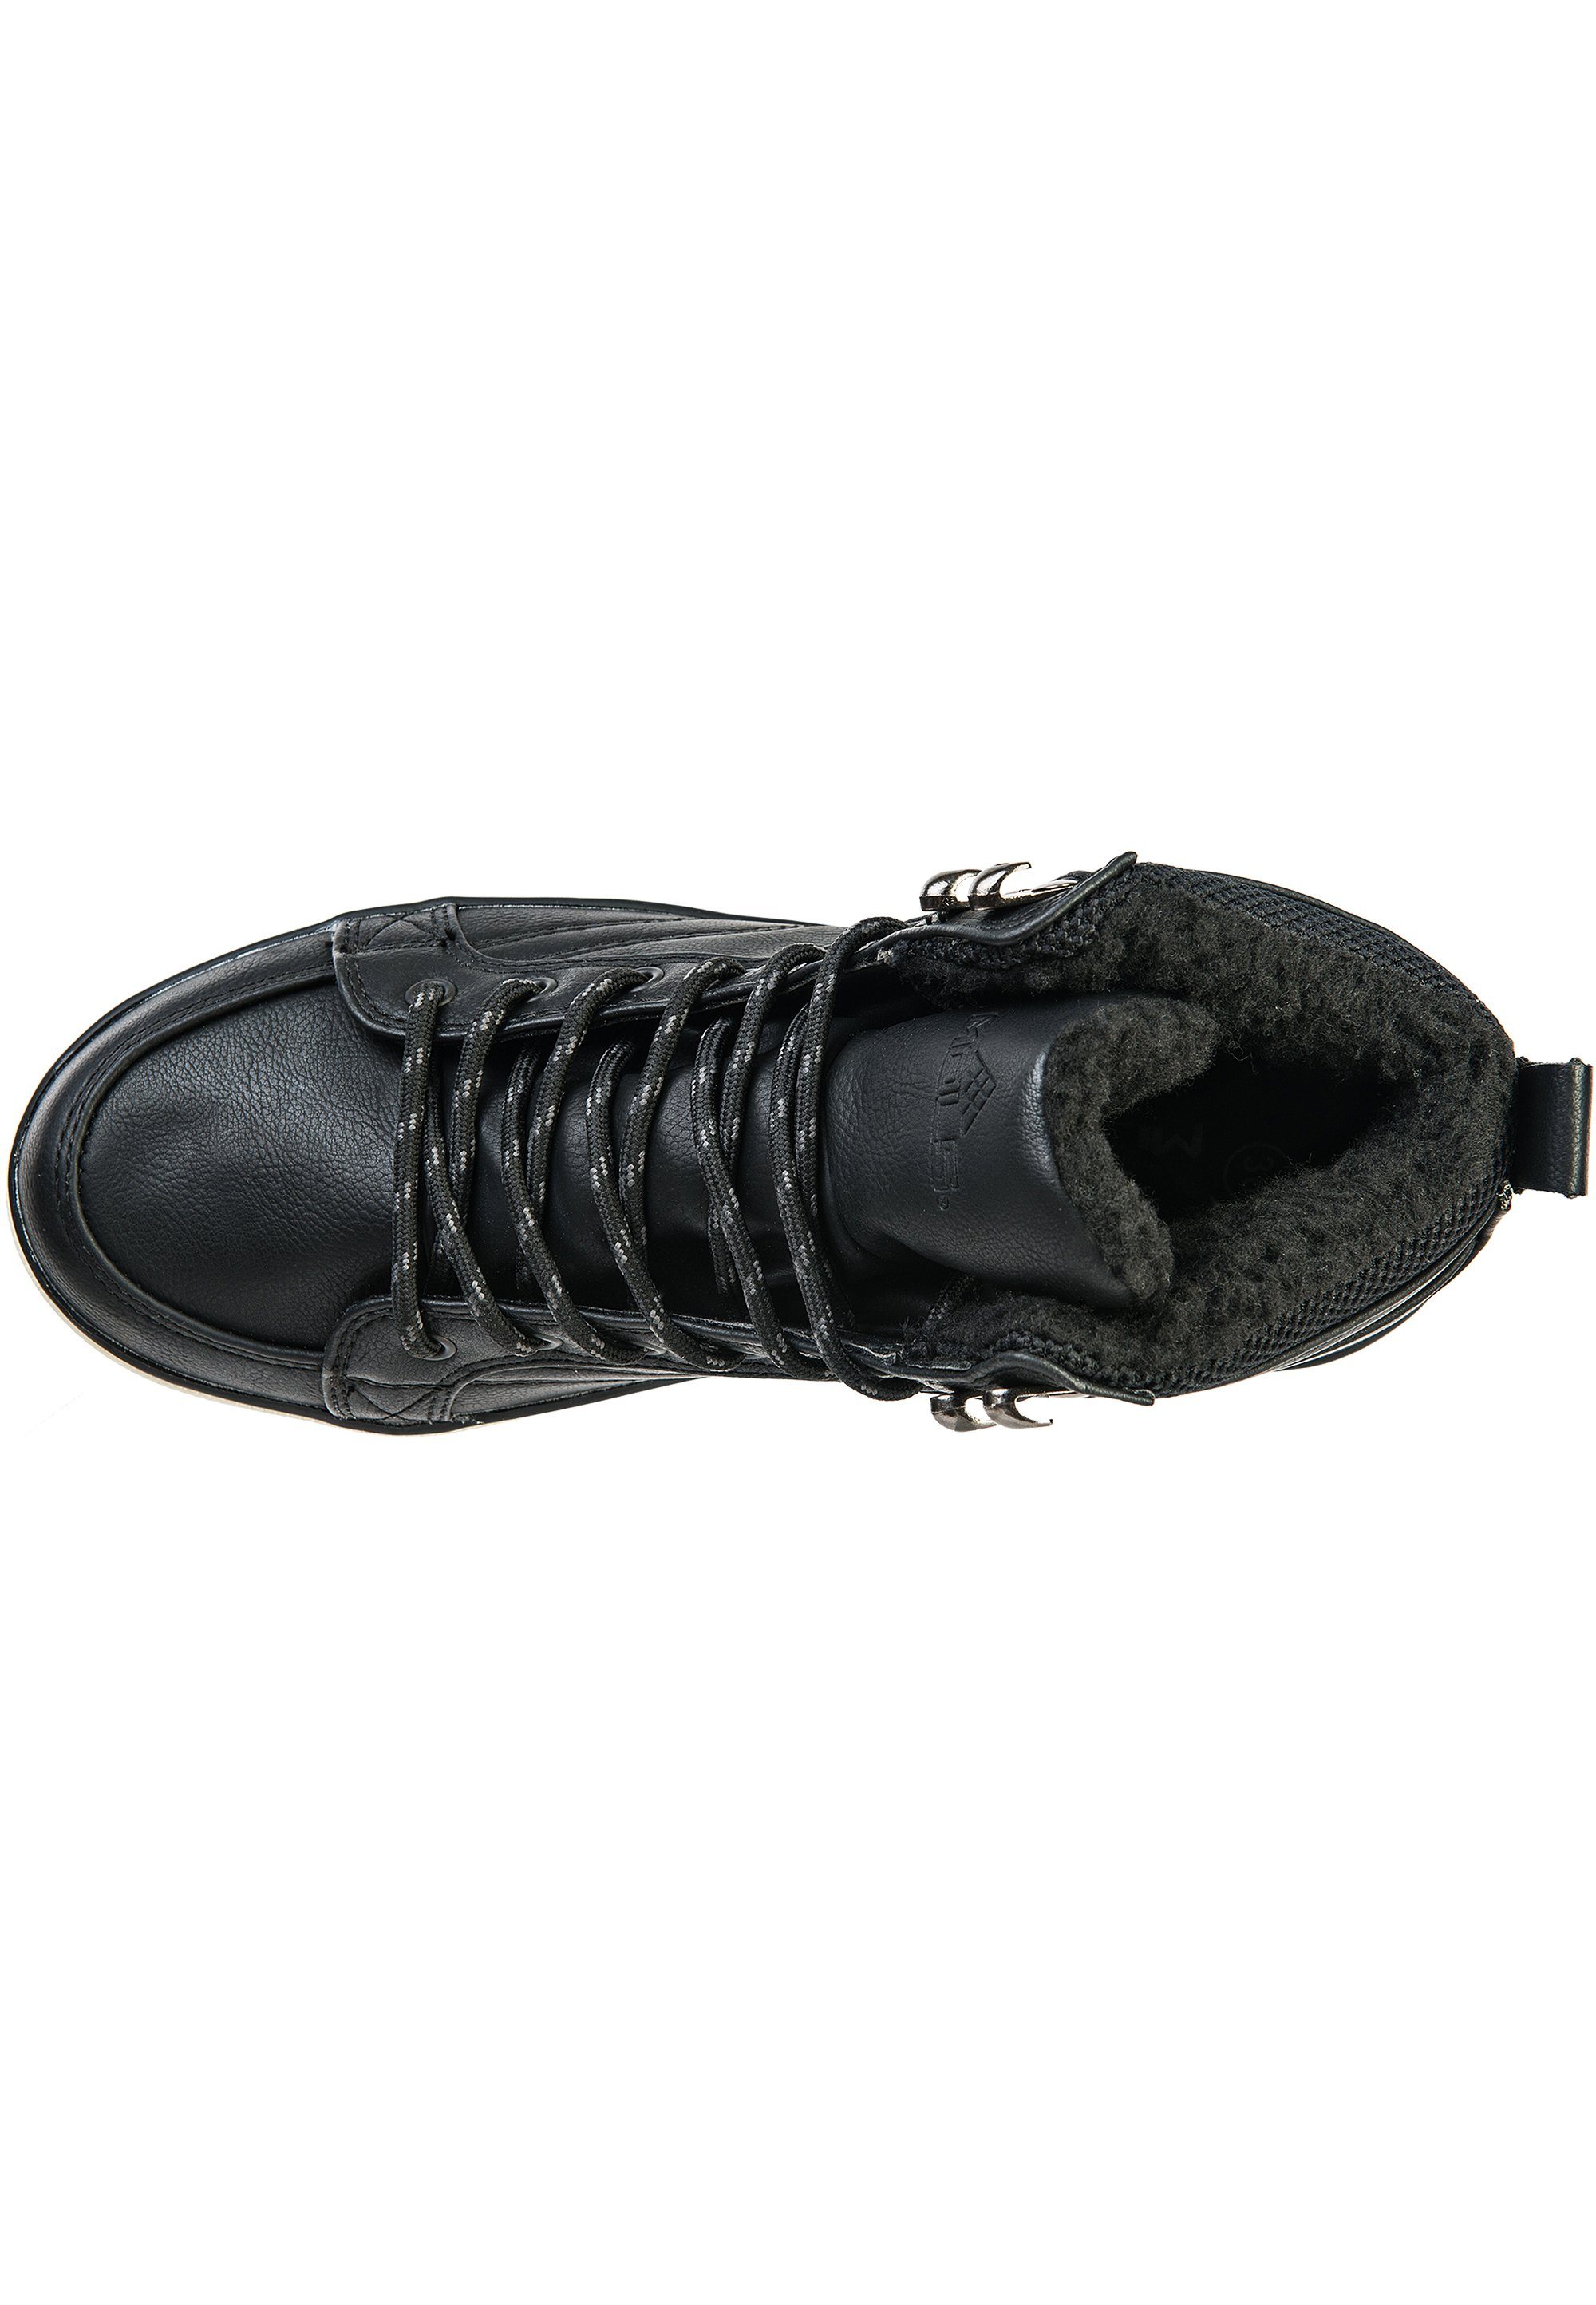 schwarz Materialien strapazierfähigen MOLS Javanes aus Stiefel